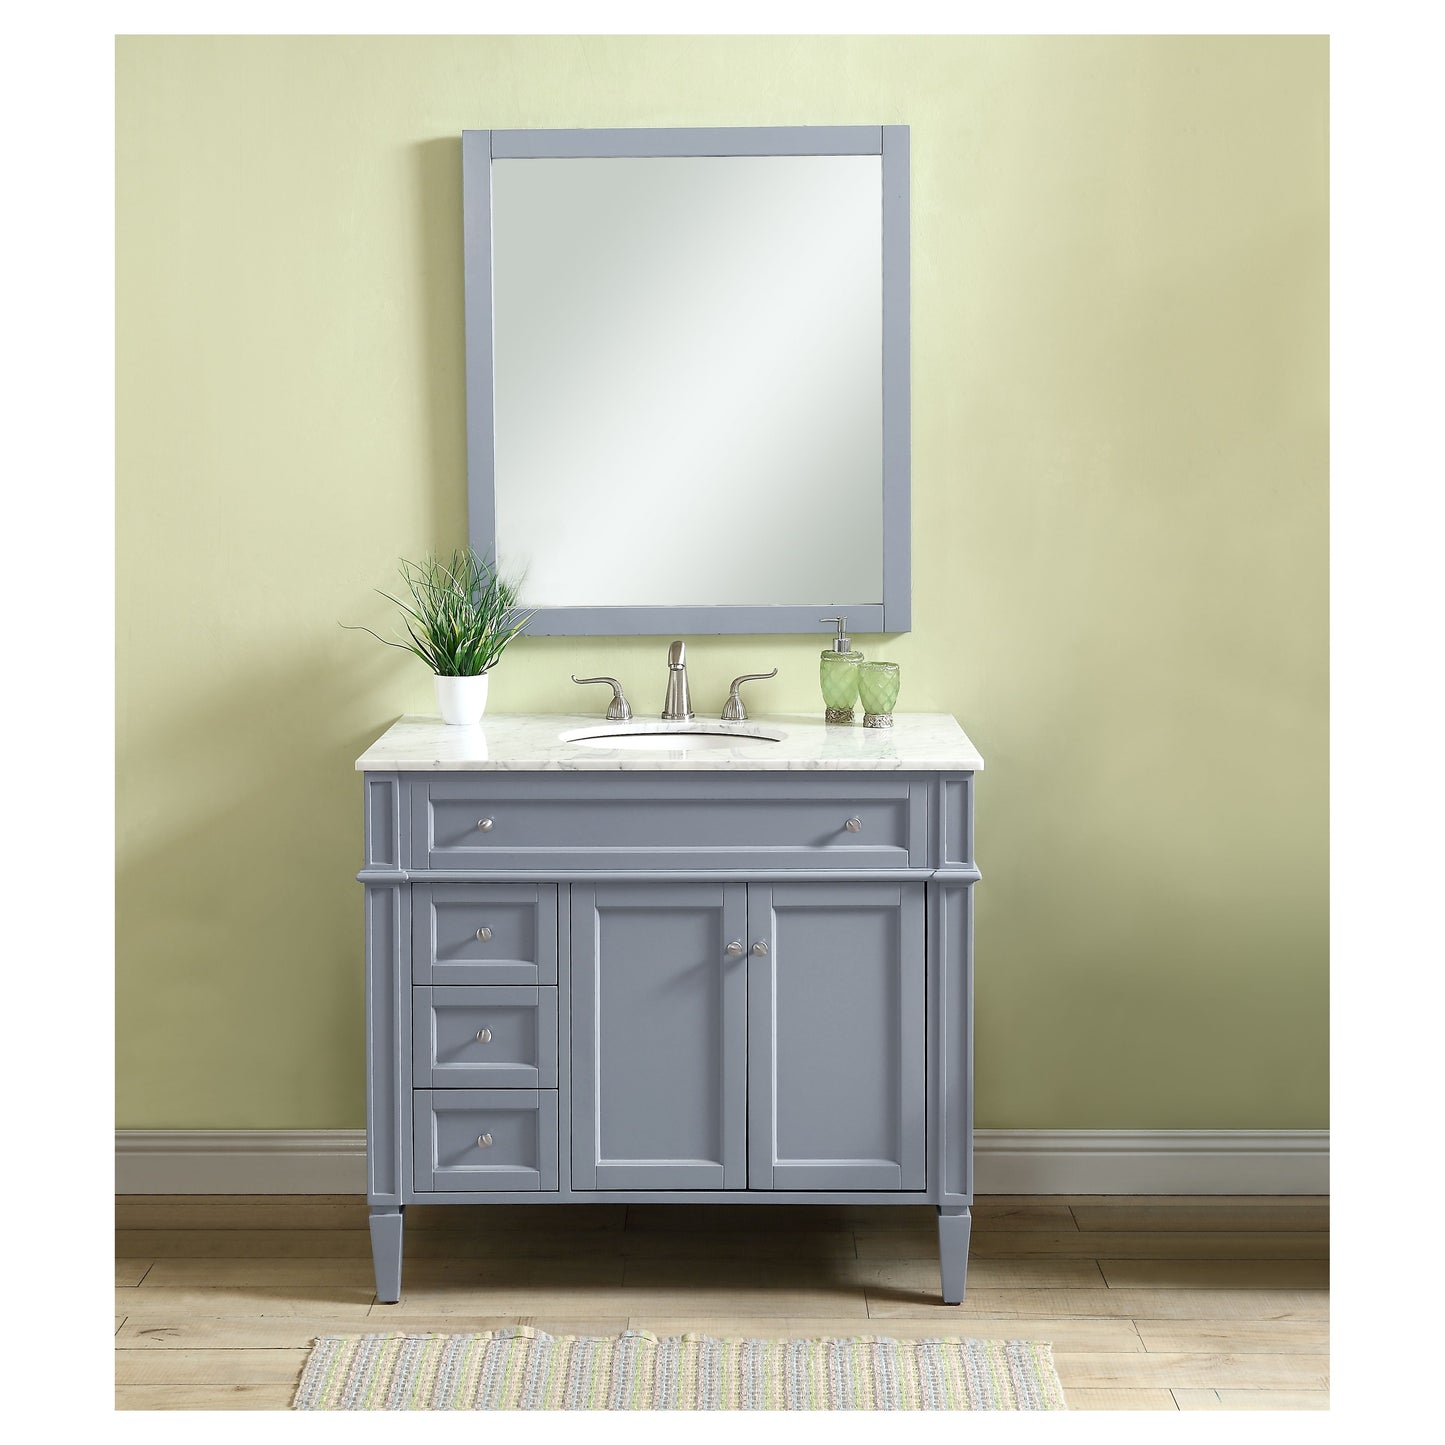 VF12540GR 40" Single Bathroom Vanity Set in Grey